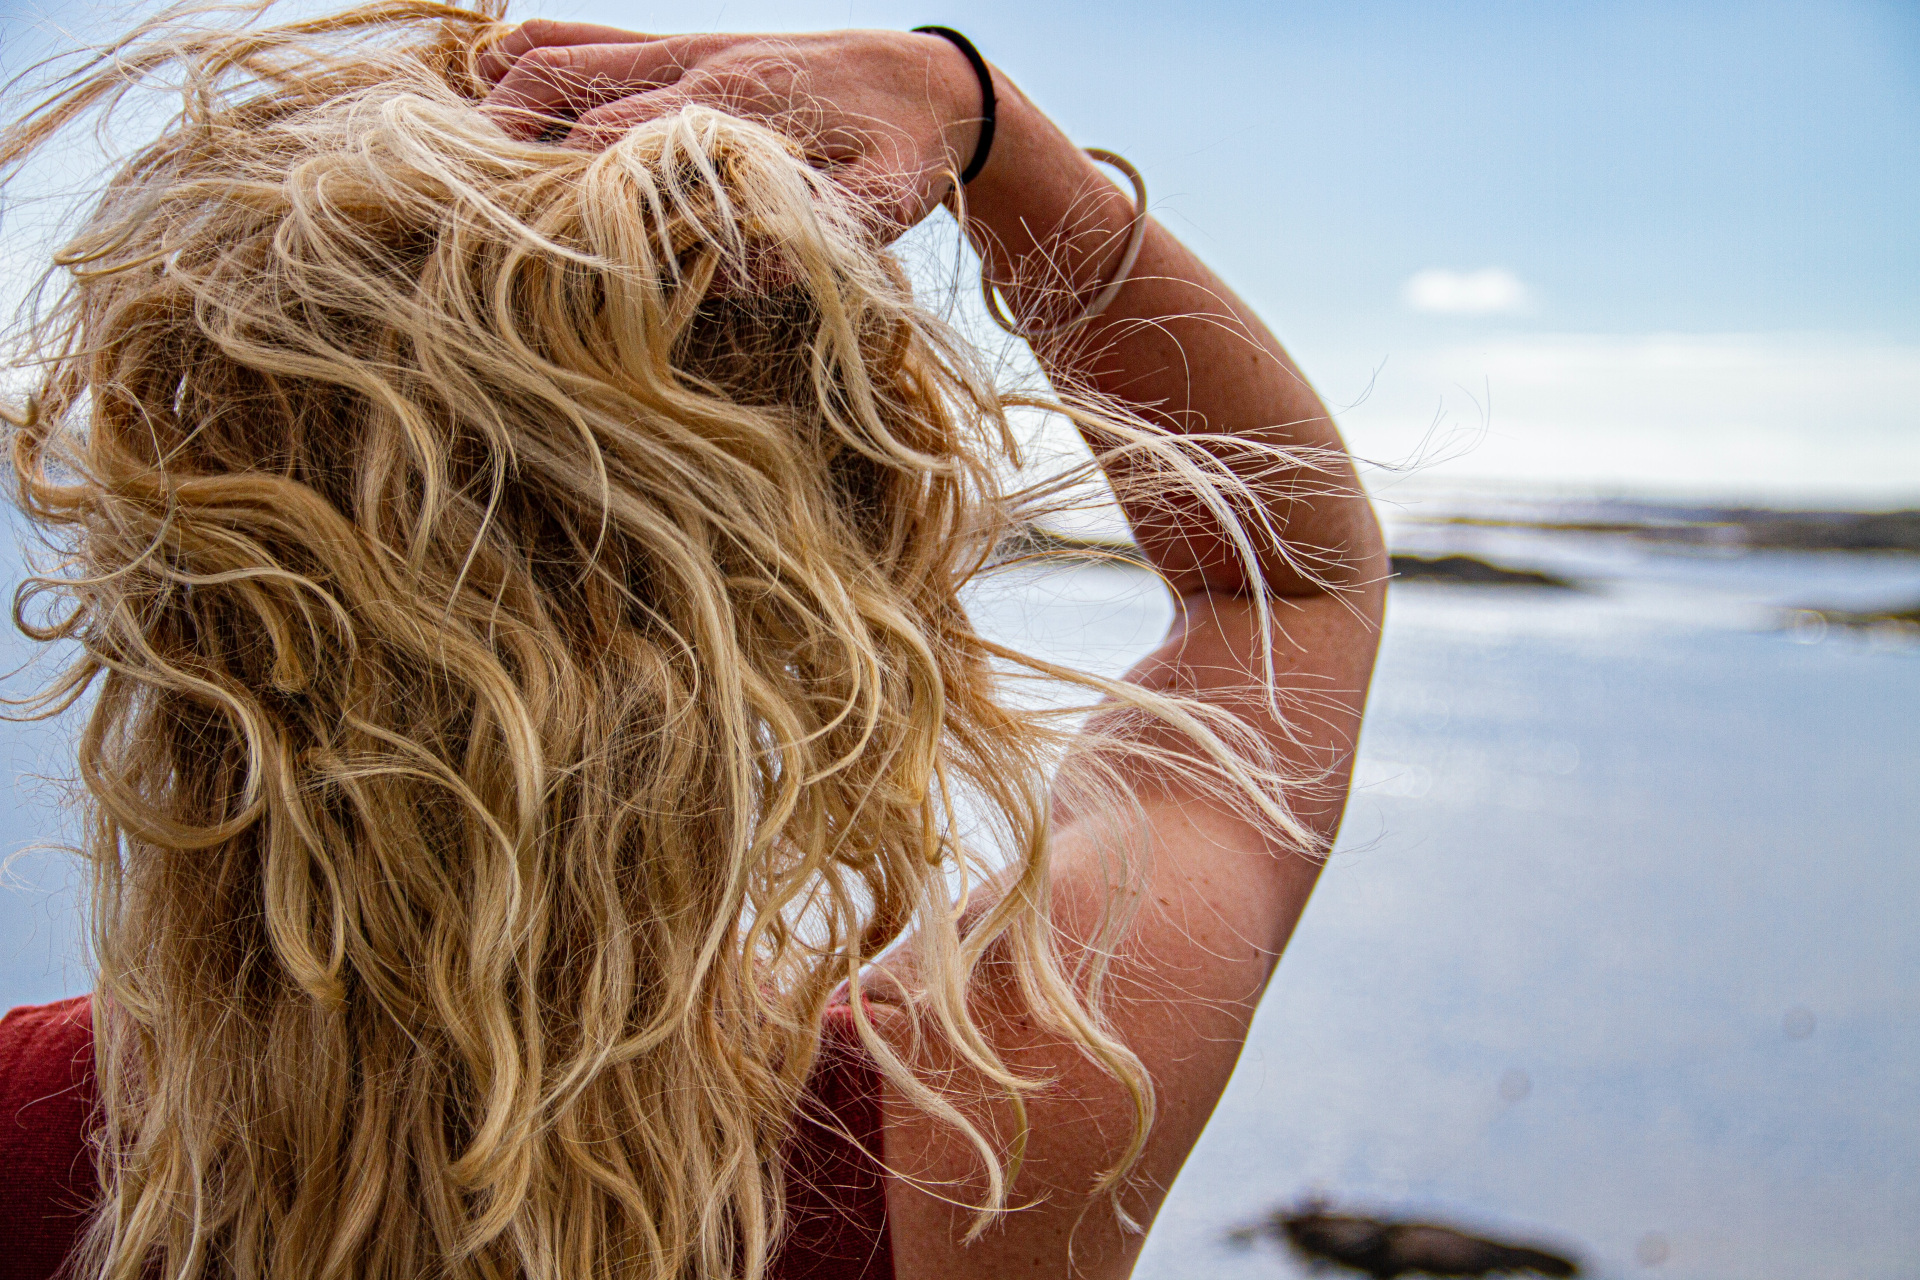 Woman with blonde hair facing away towards ocean